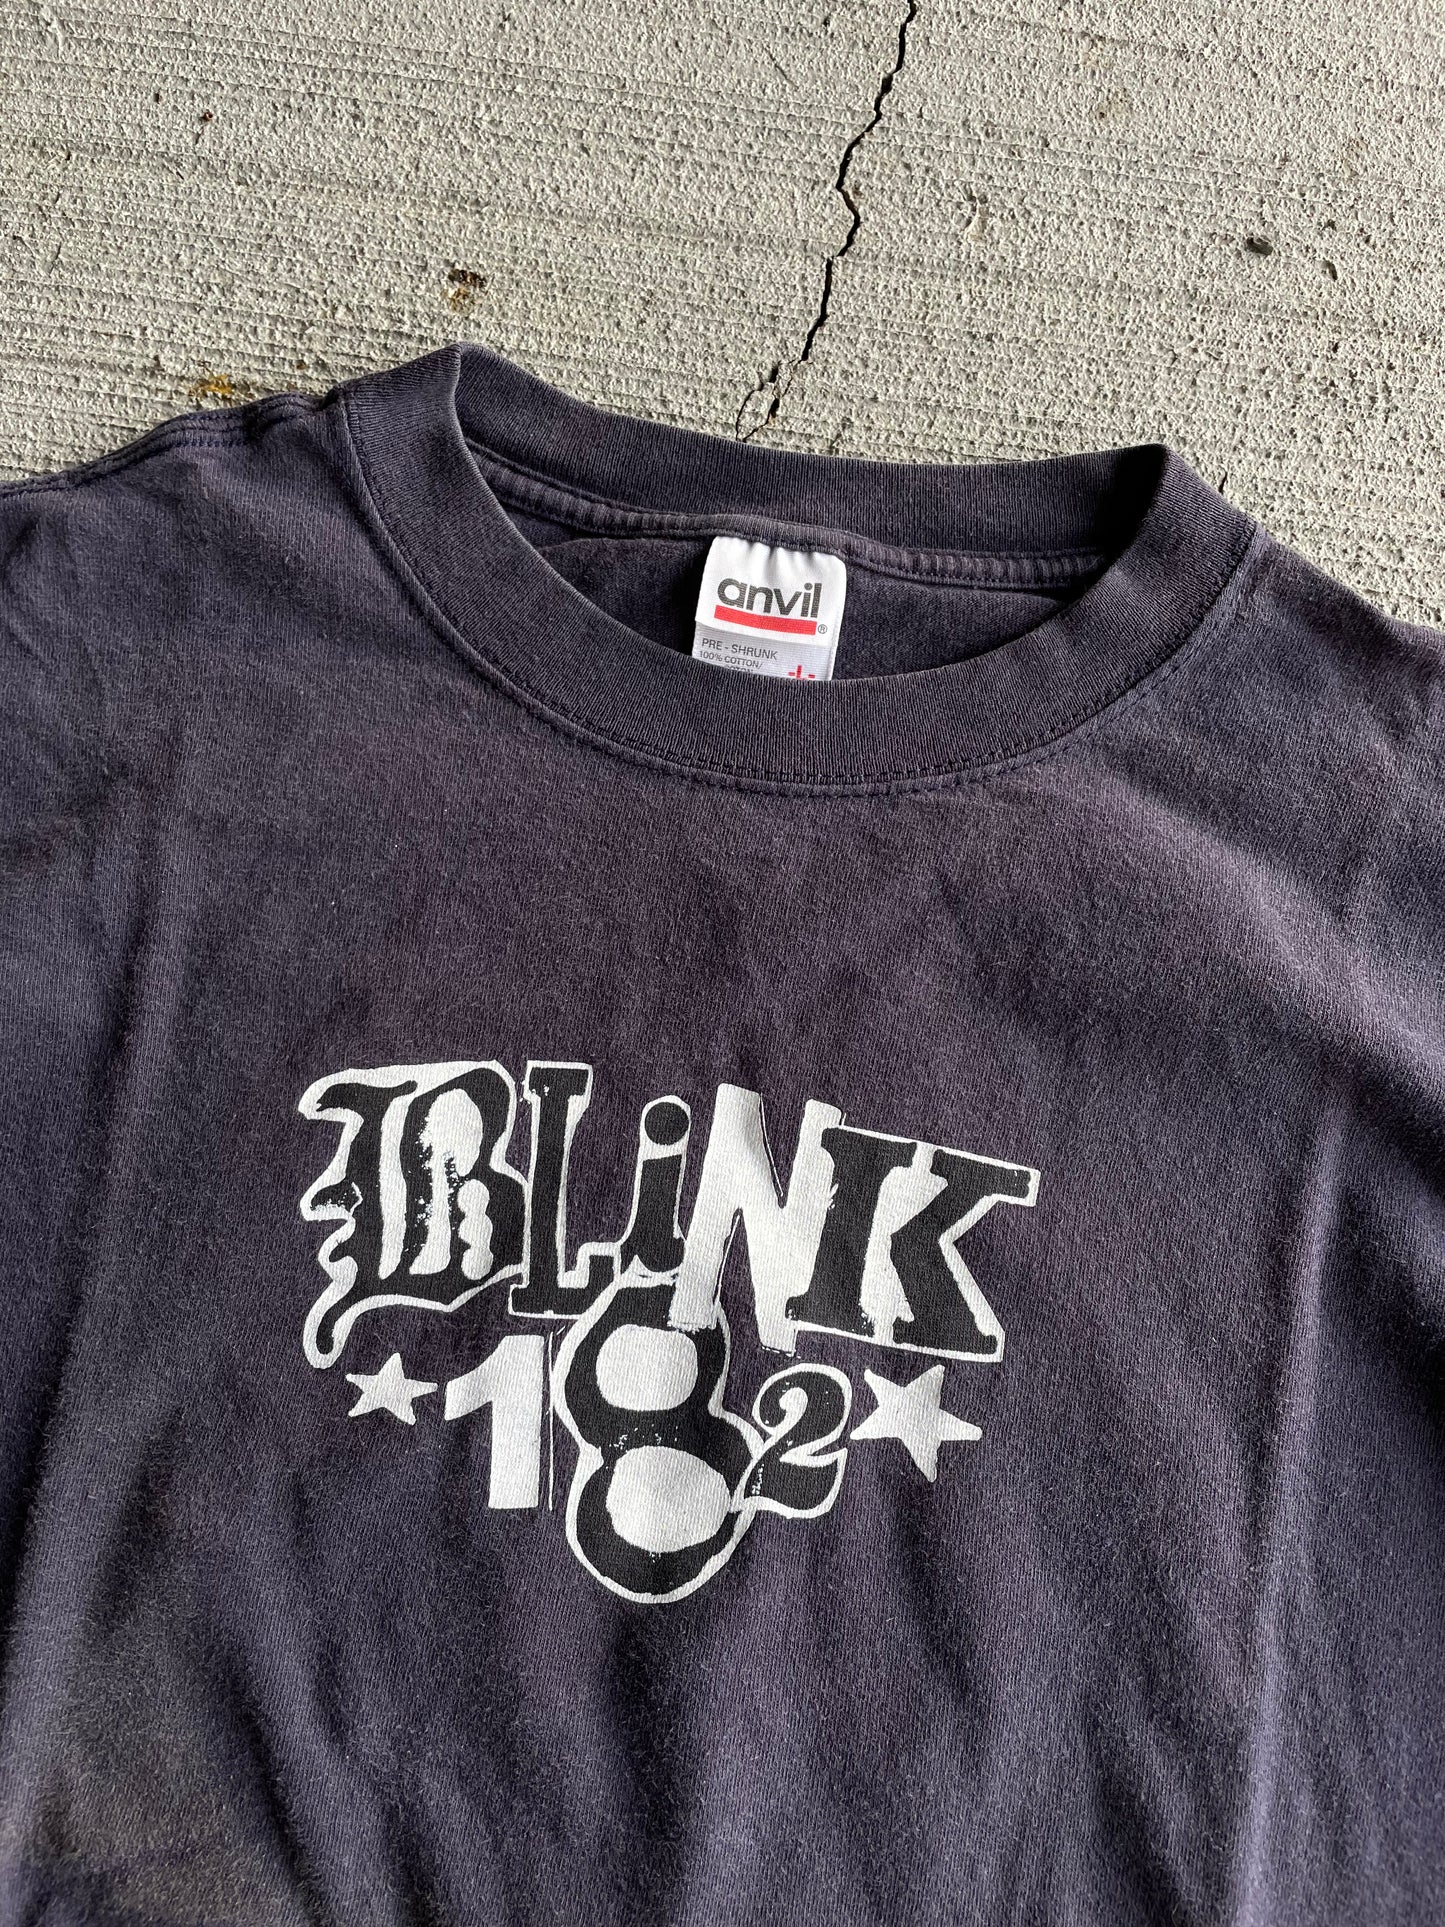 2002 Blink 182 Pop Disaster Tee